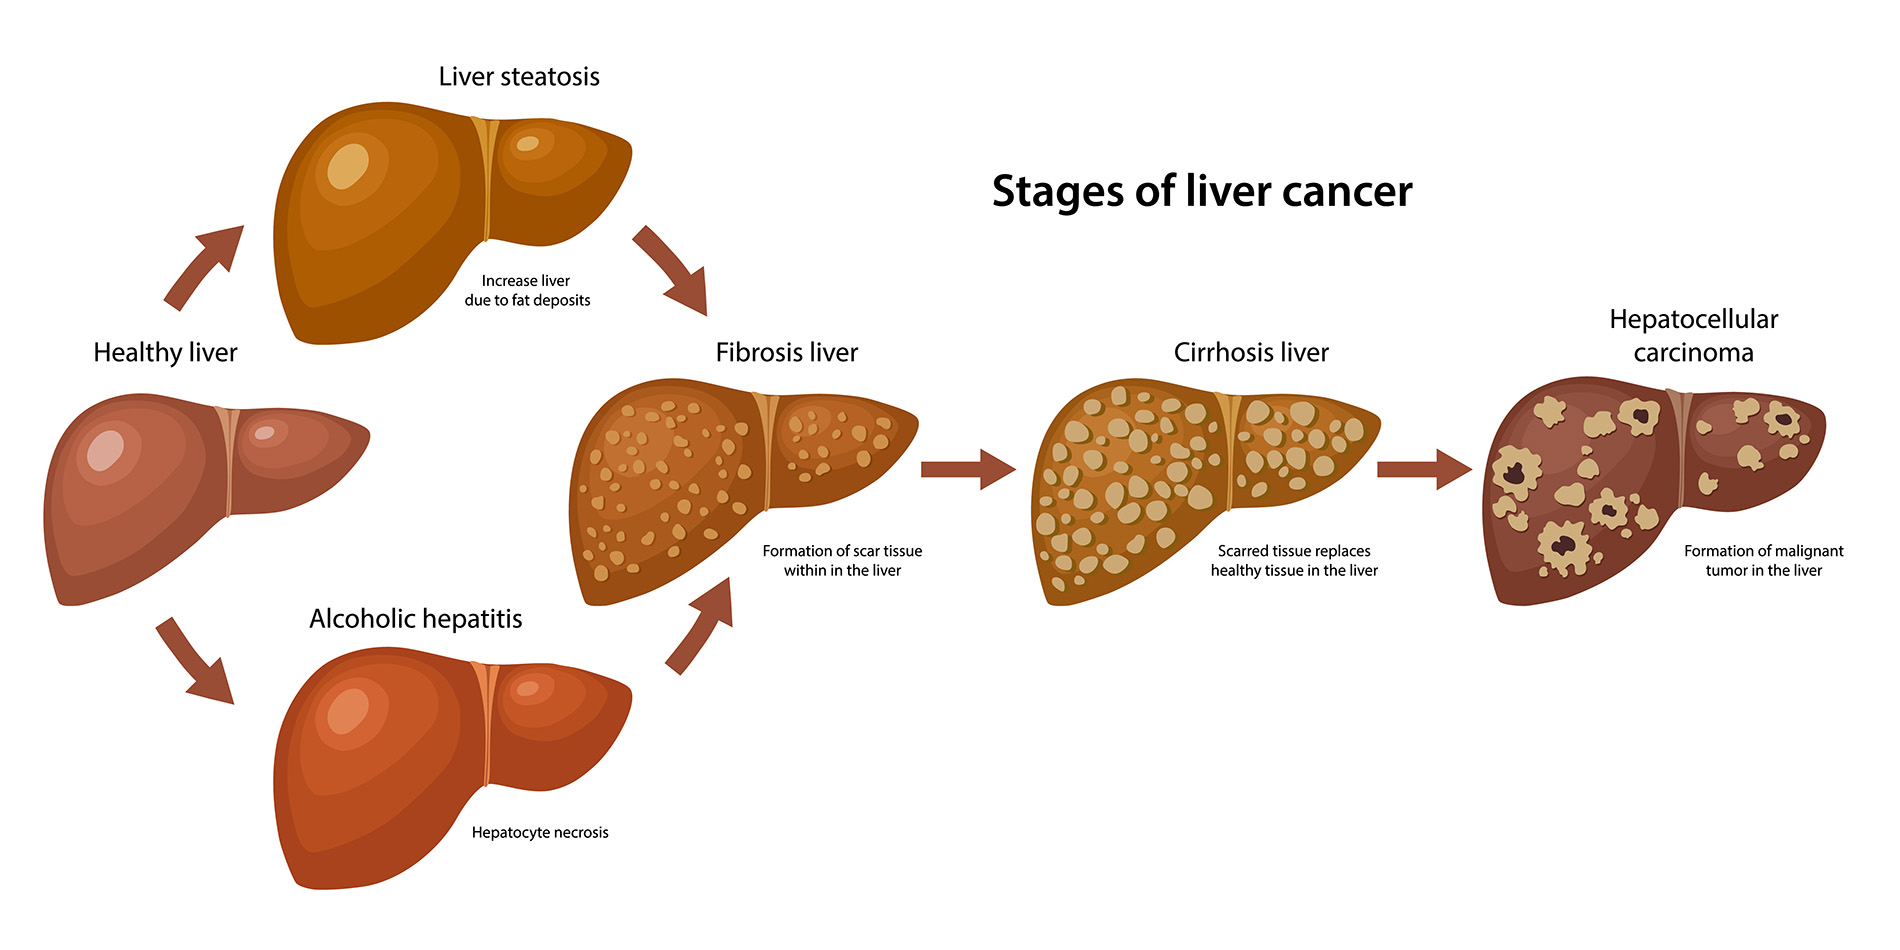 Liver Cancer Stages